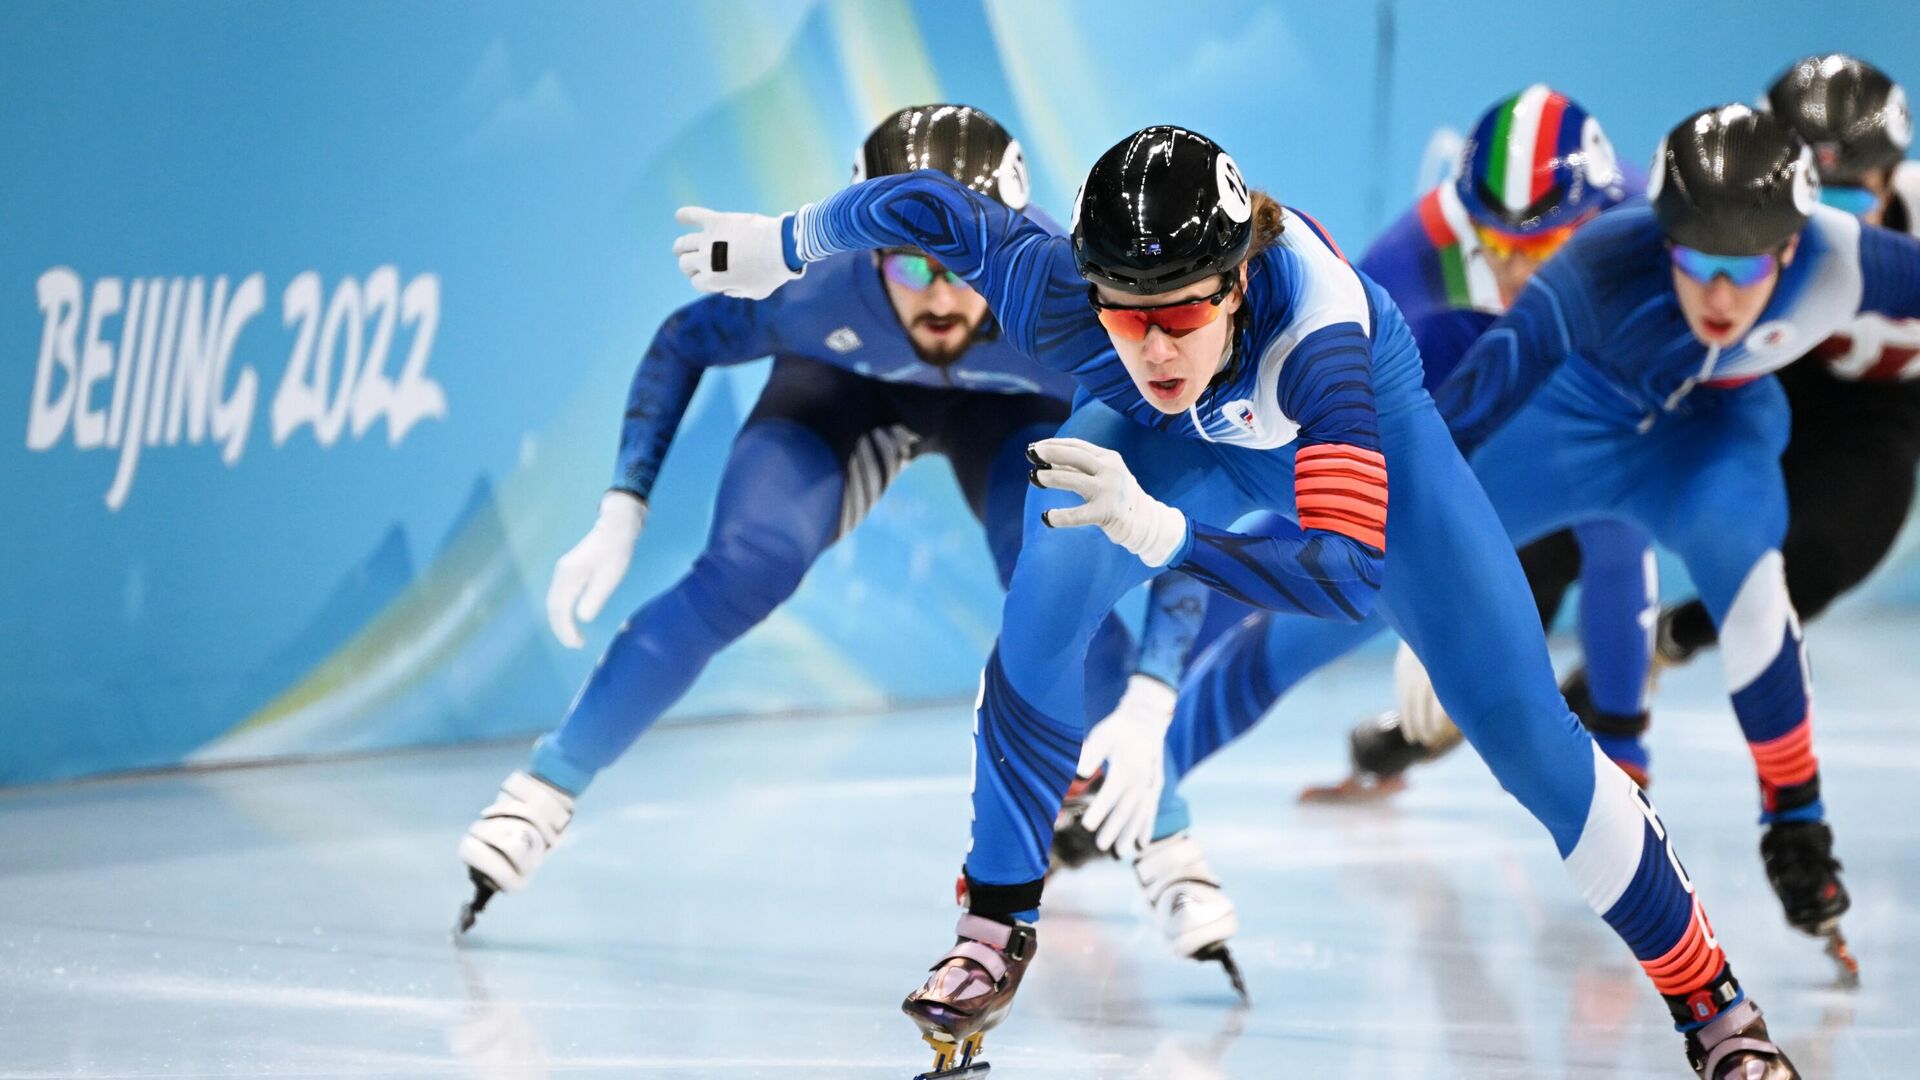 Два конькобежца из России запросили смену спортивного гражданства